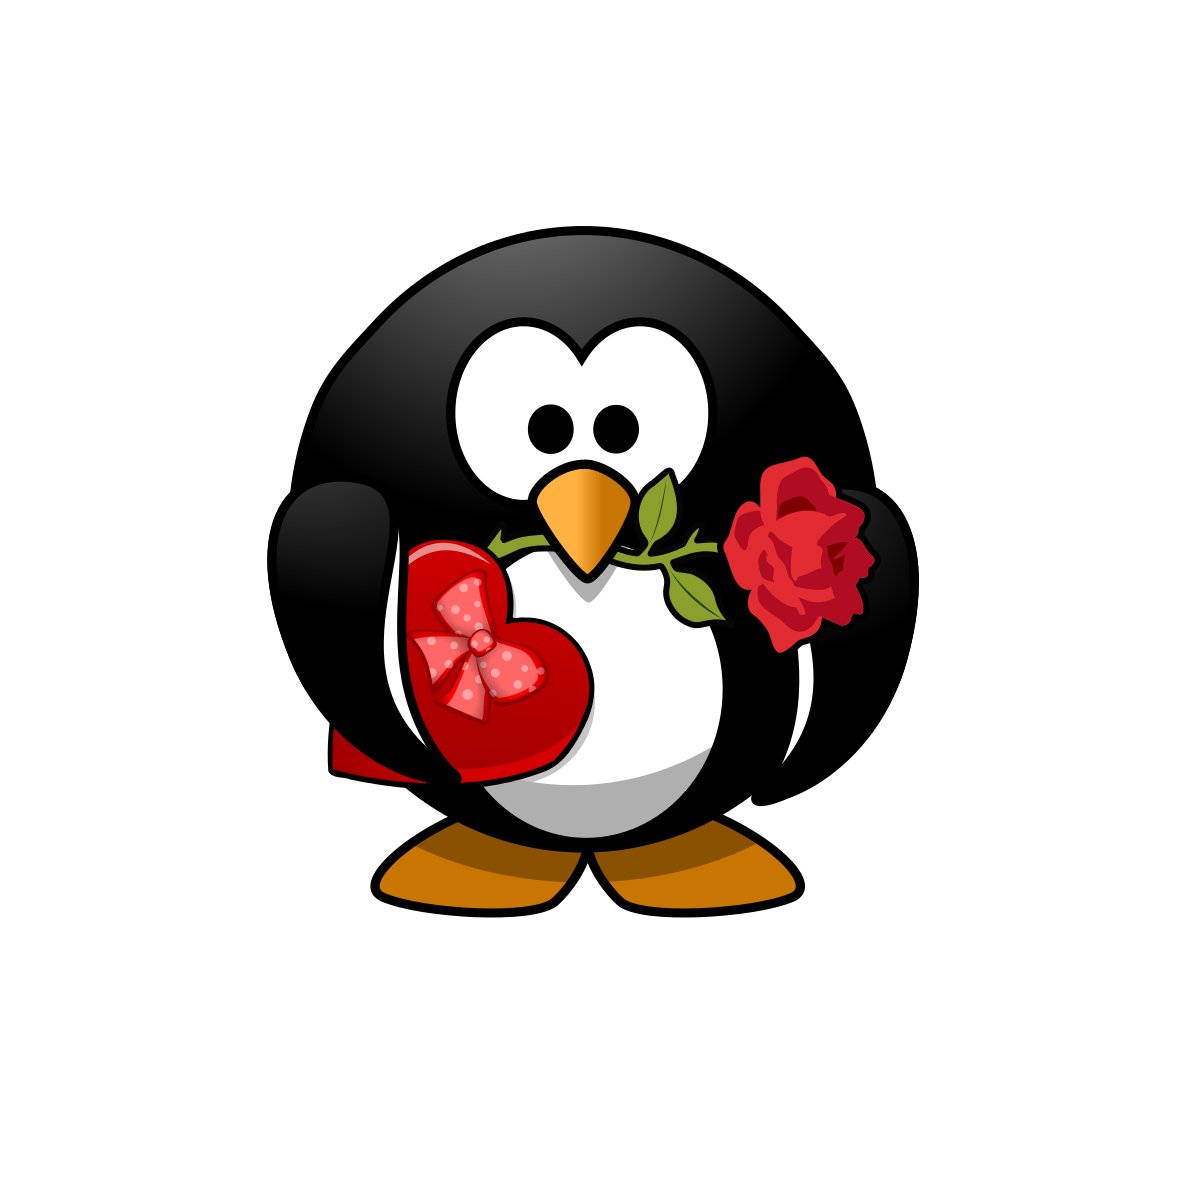 Valentine Pinguin - Small File Clipart by rchanc : Valentine 